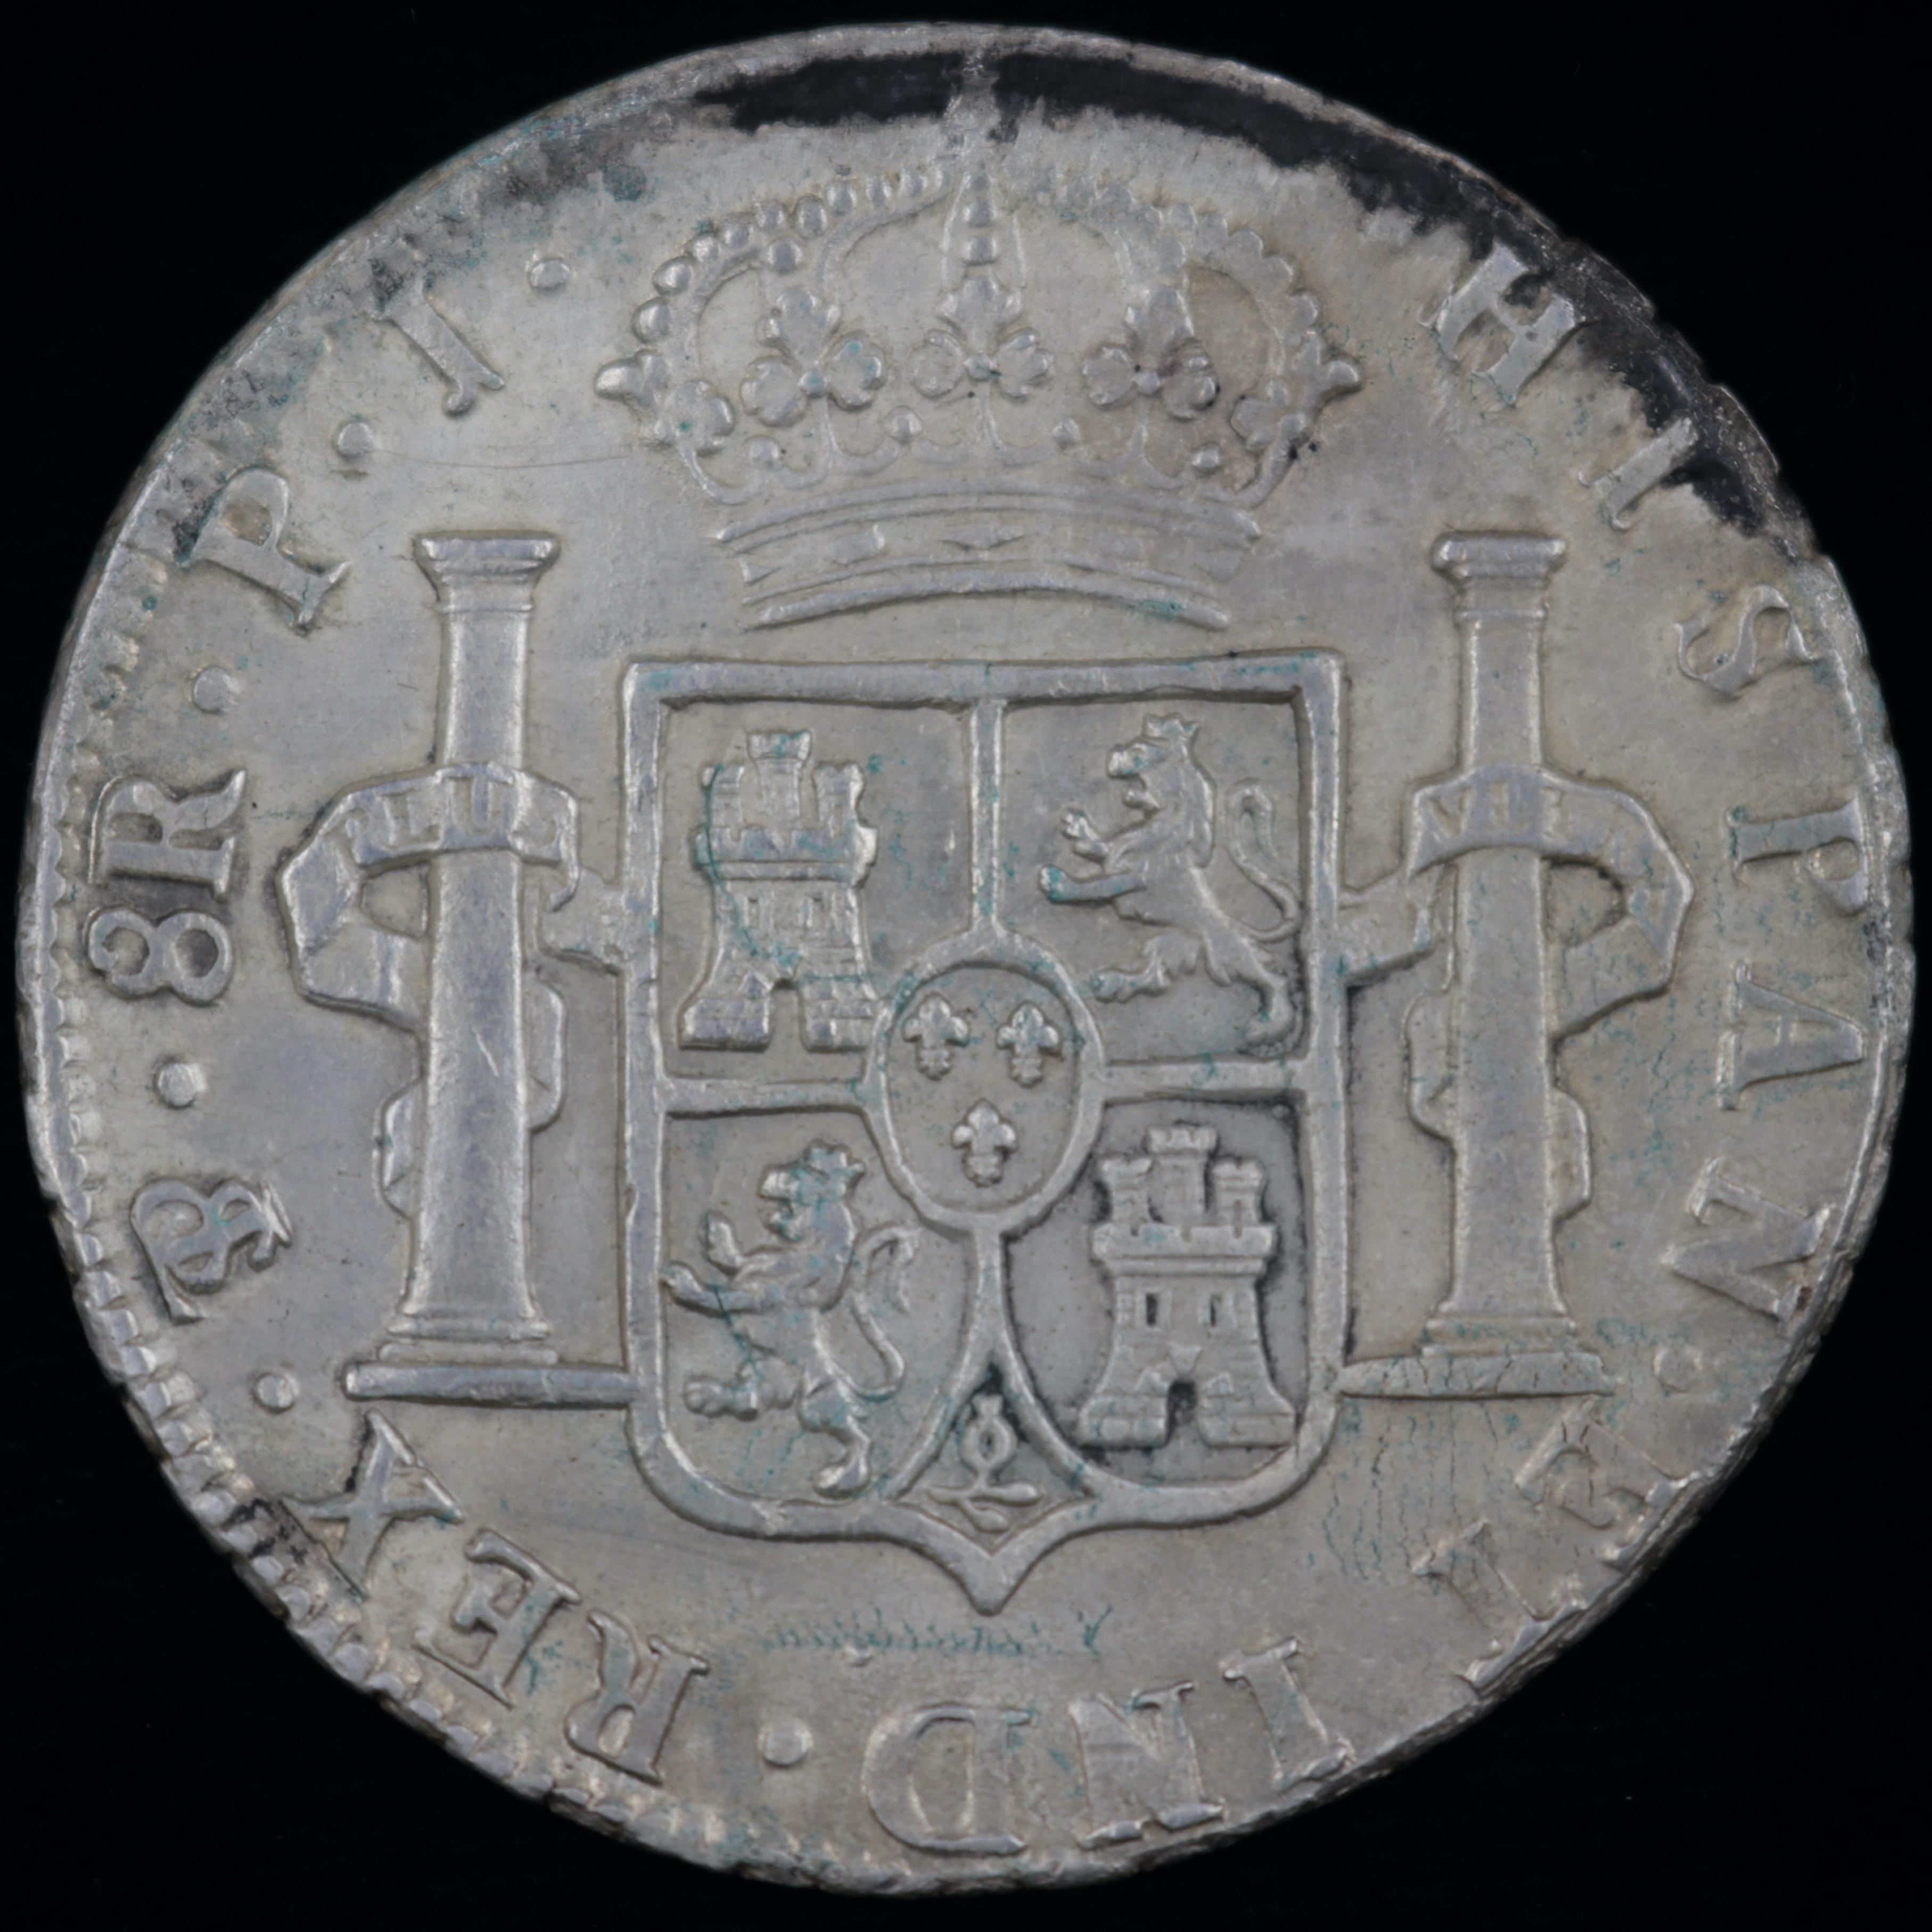 1808 PTS Bolivia silver 8 real